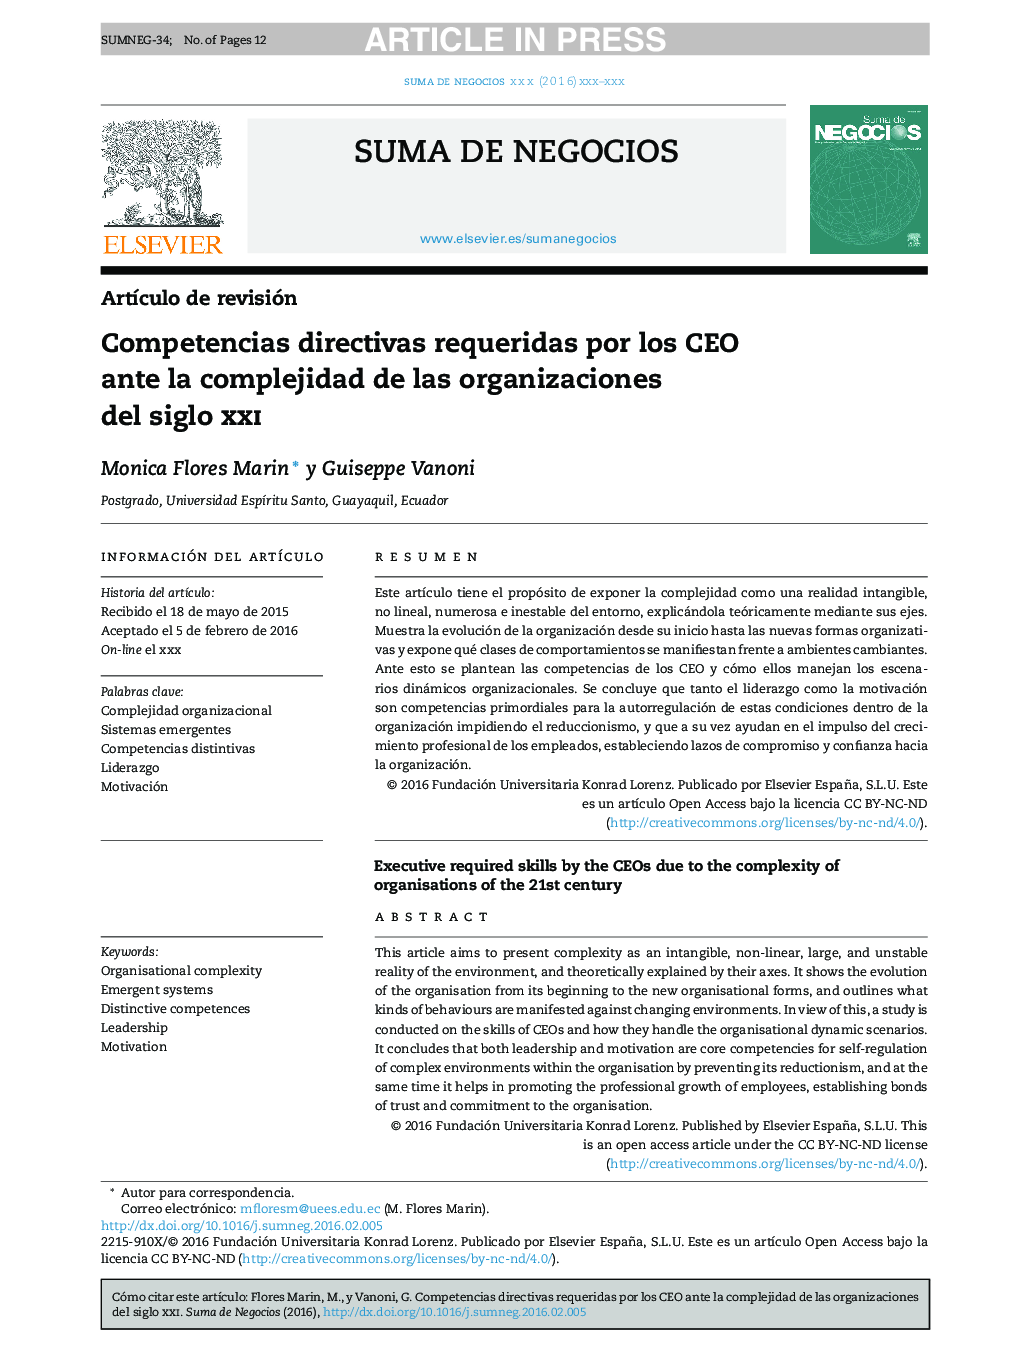 Competencias directivas requeridas por los CEO ante la complejidad de las organizaciones del siglo xxi